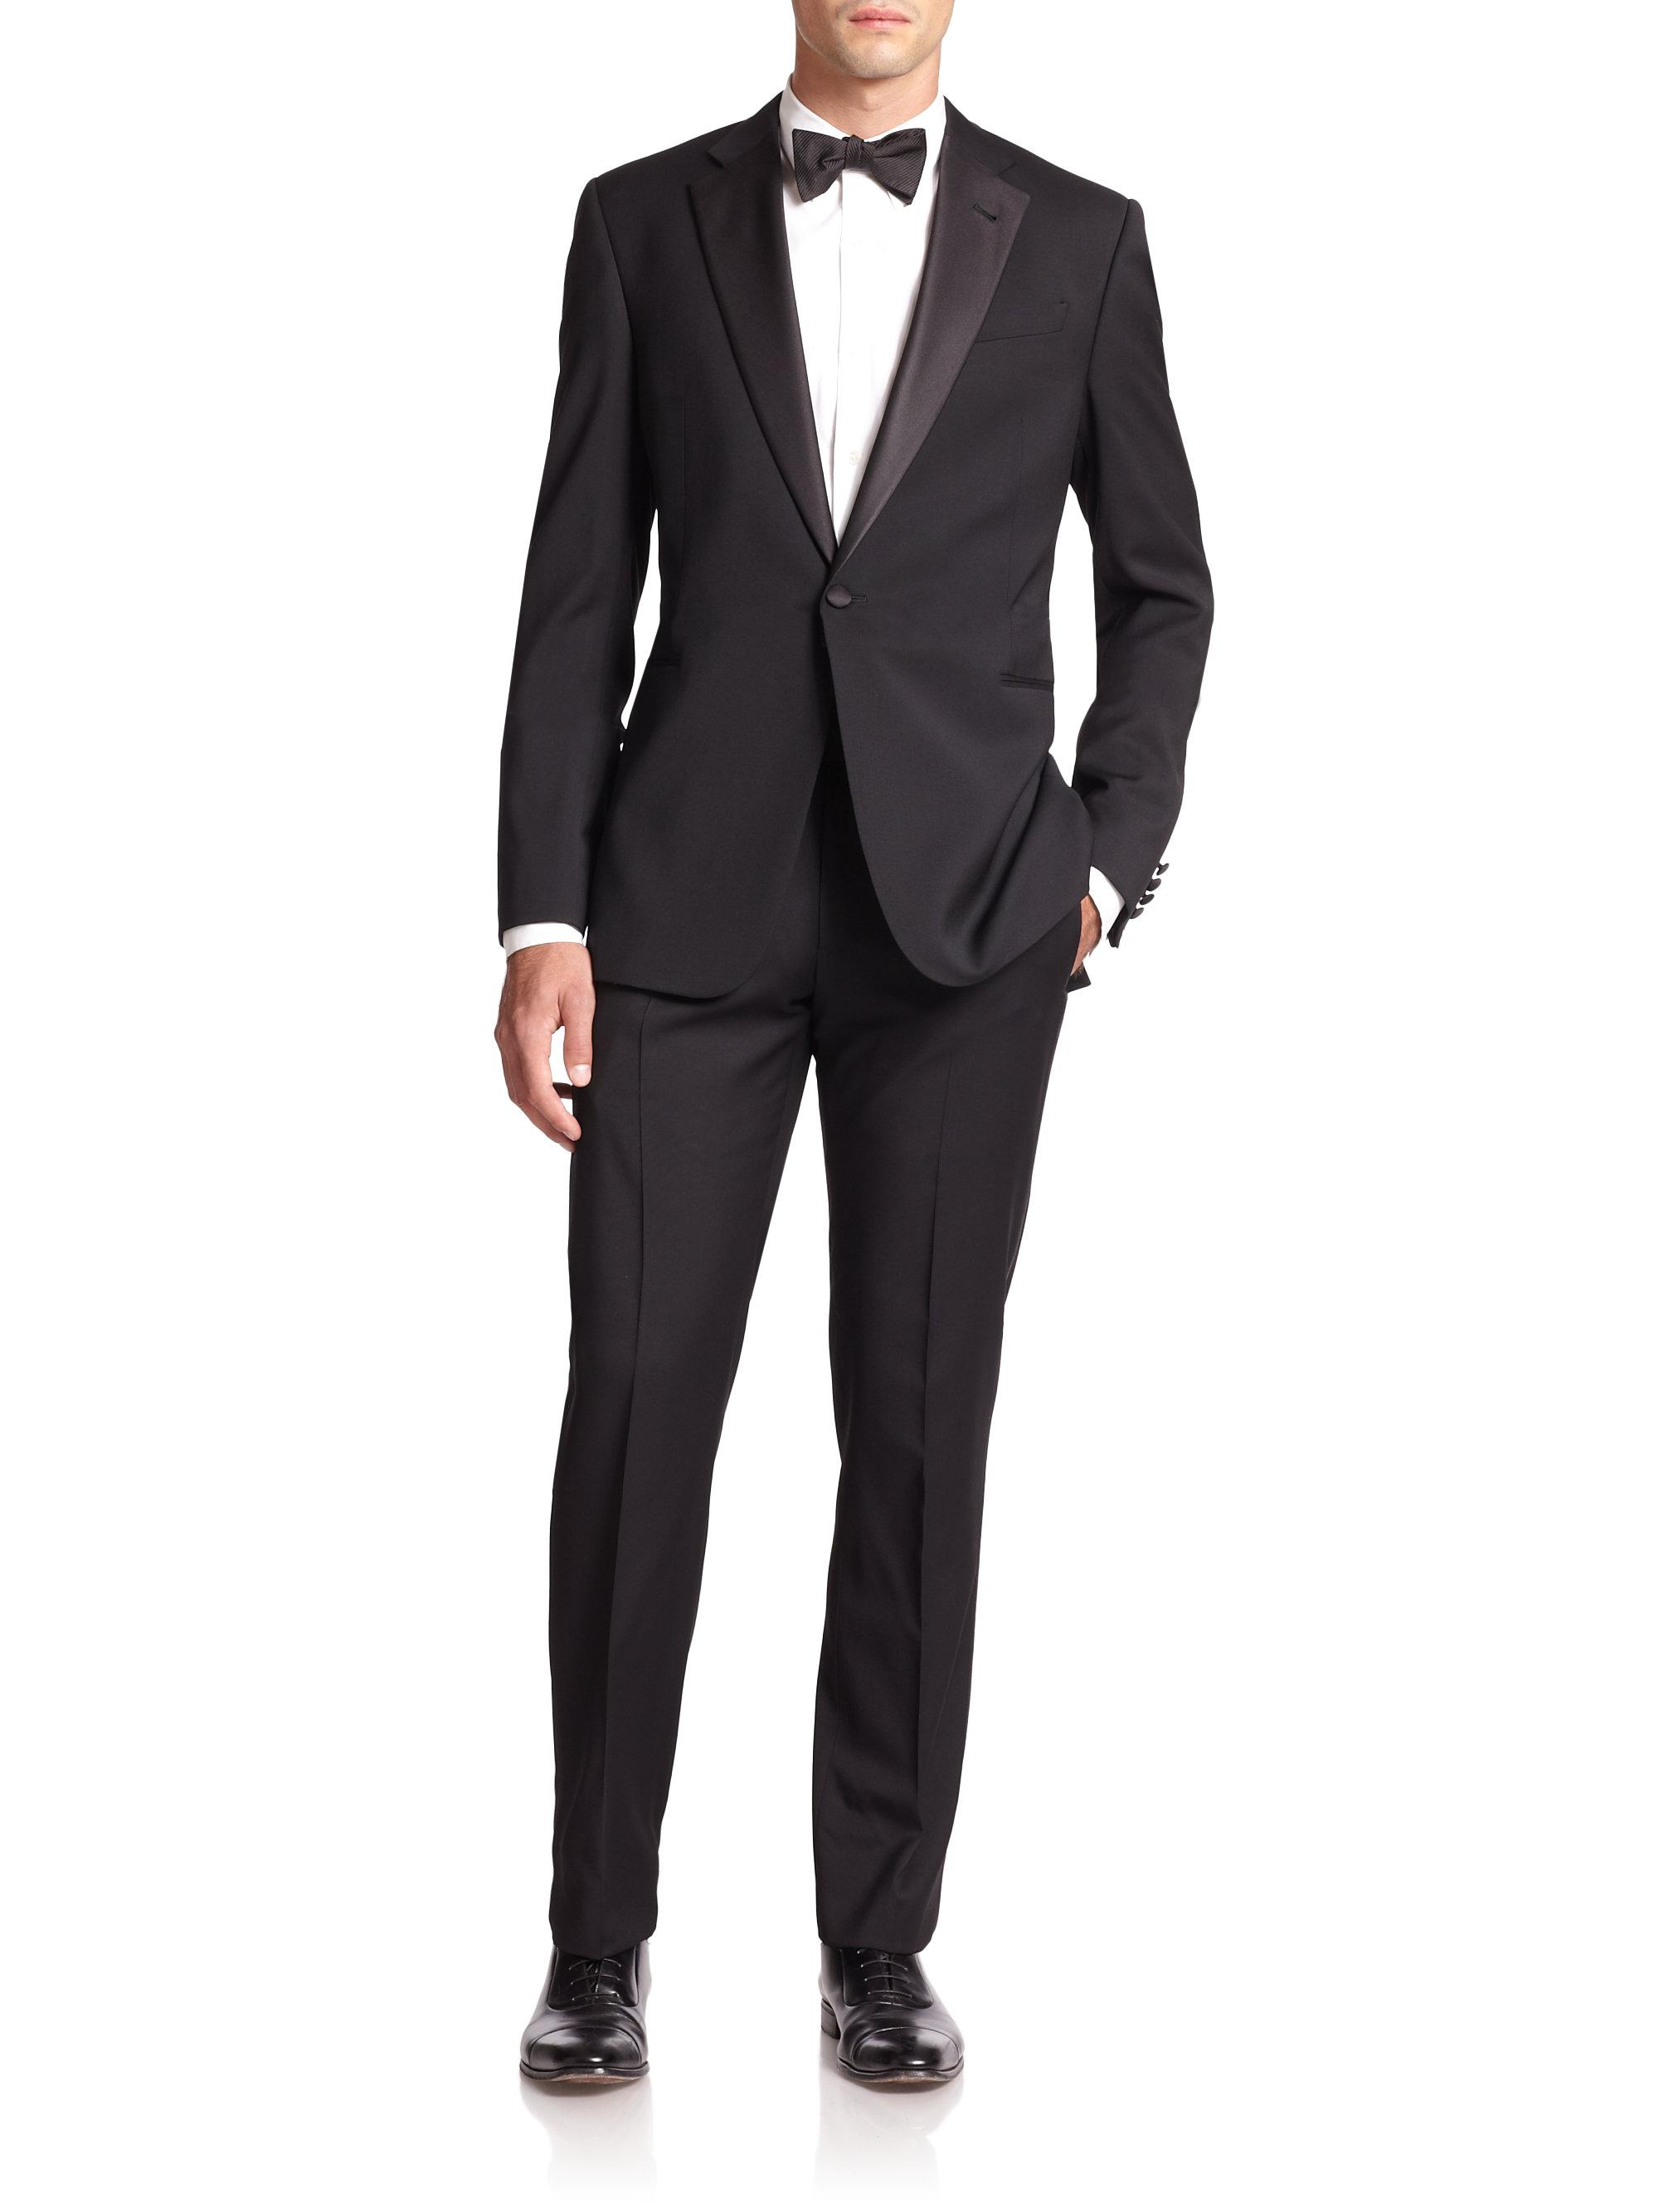 Armani Notched-lapel Virgin Wool Tuxedo in Black for Men - Lyst